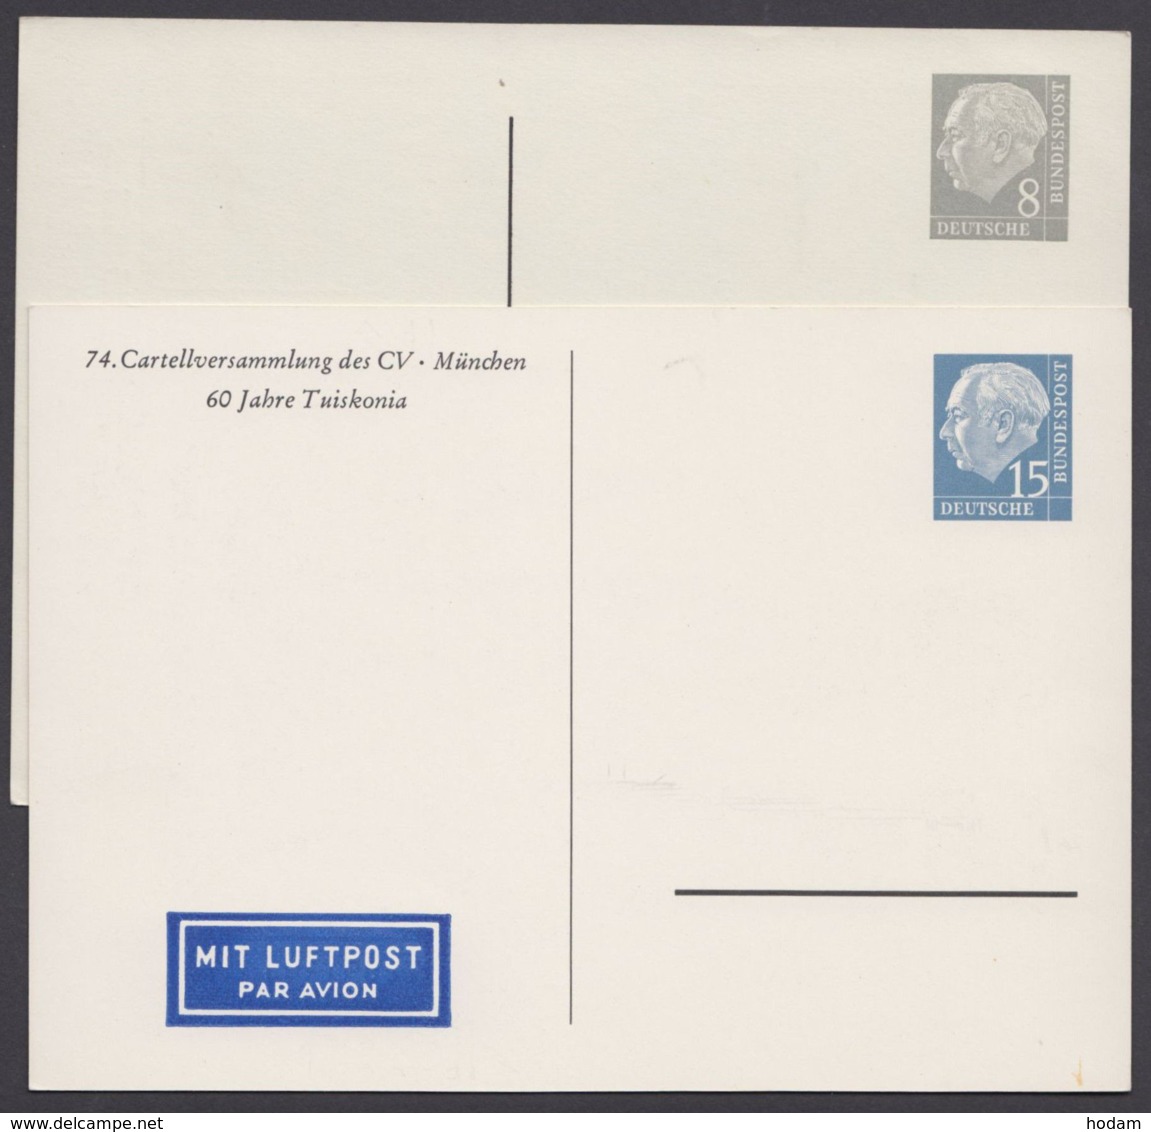 PP 7 D 2/01 A, PP 9 D 2/02 A, "Heuß", 2 Karten Mit Kleiner Auflage, Ungebraucht - Private Postcards - Mint